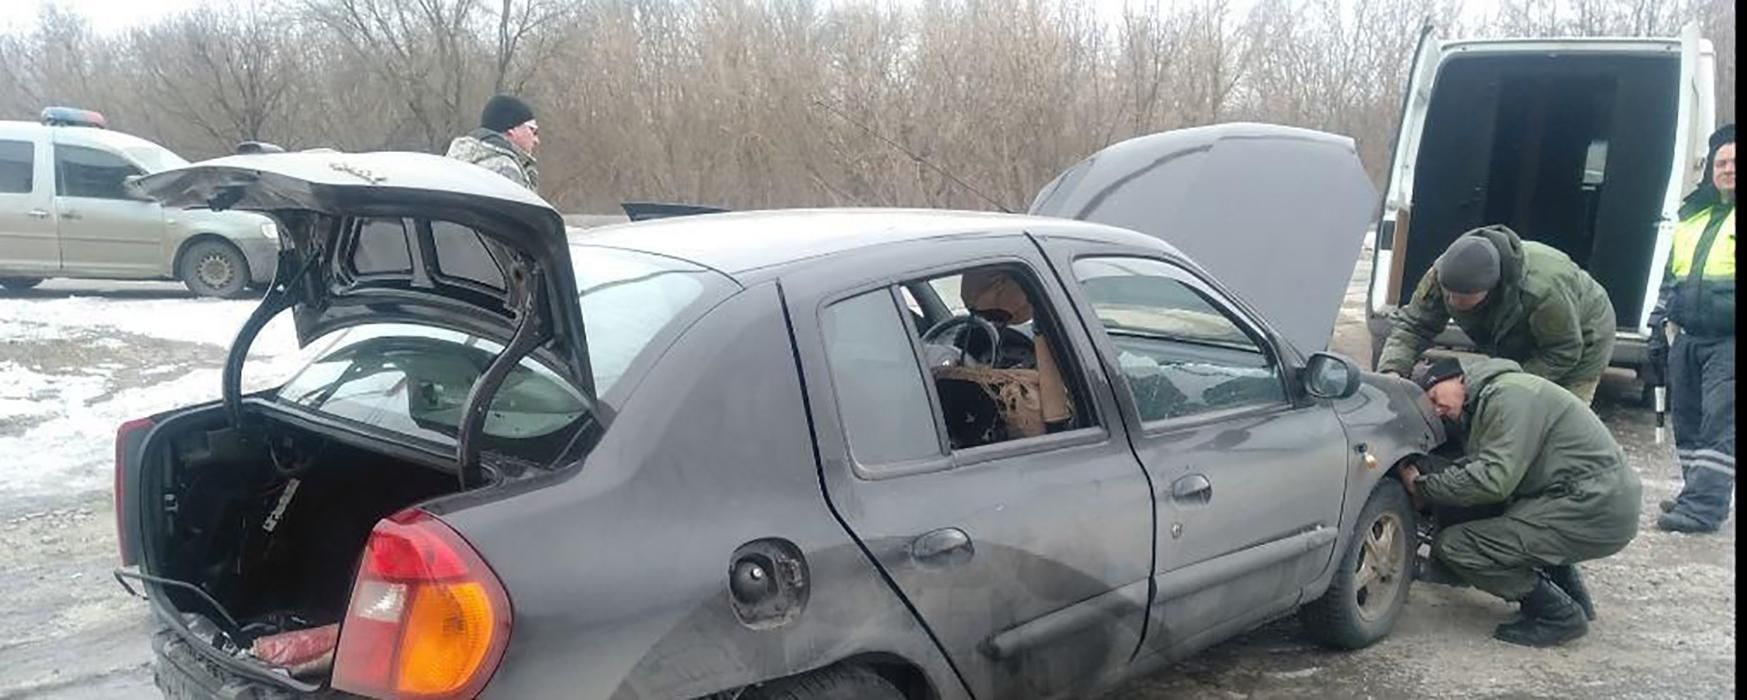 Еще одна попытка ликвидации: в оккупированной Макеевке подорвали авто командира боевиков. Фото